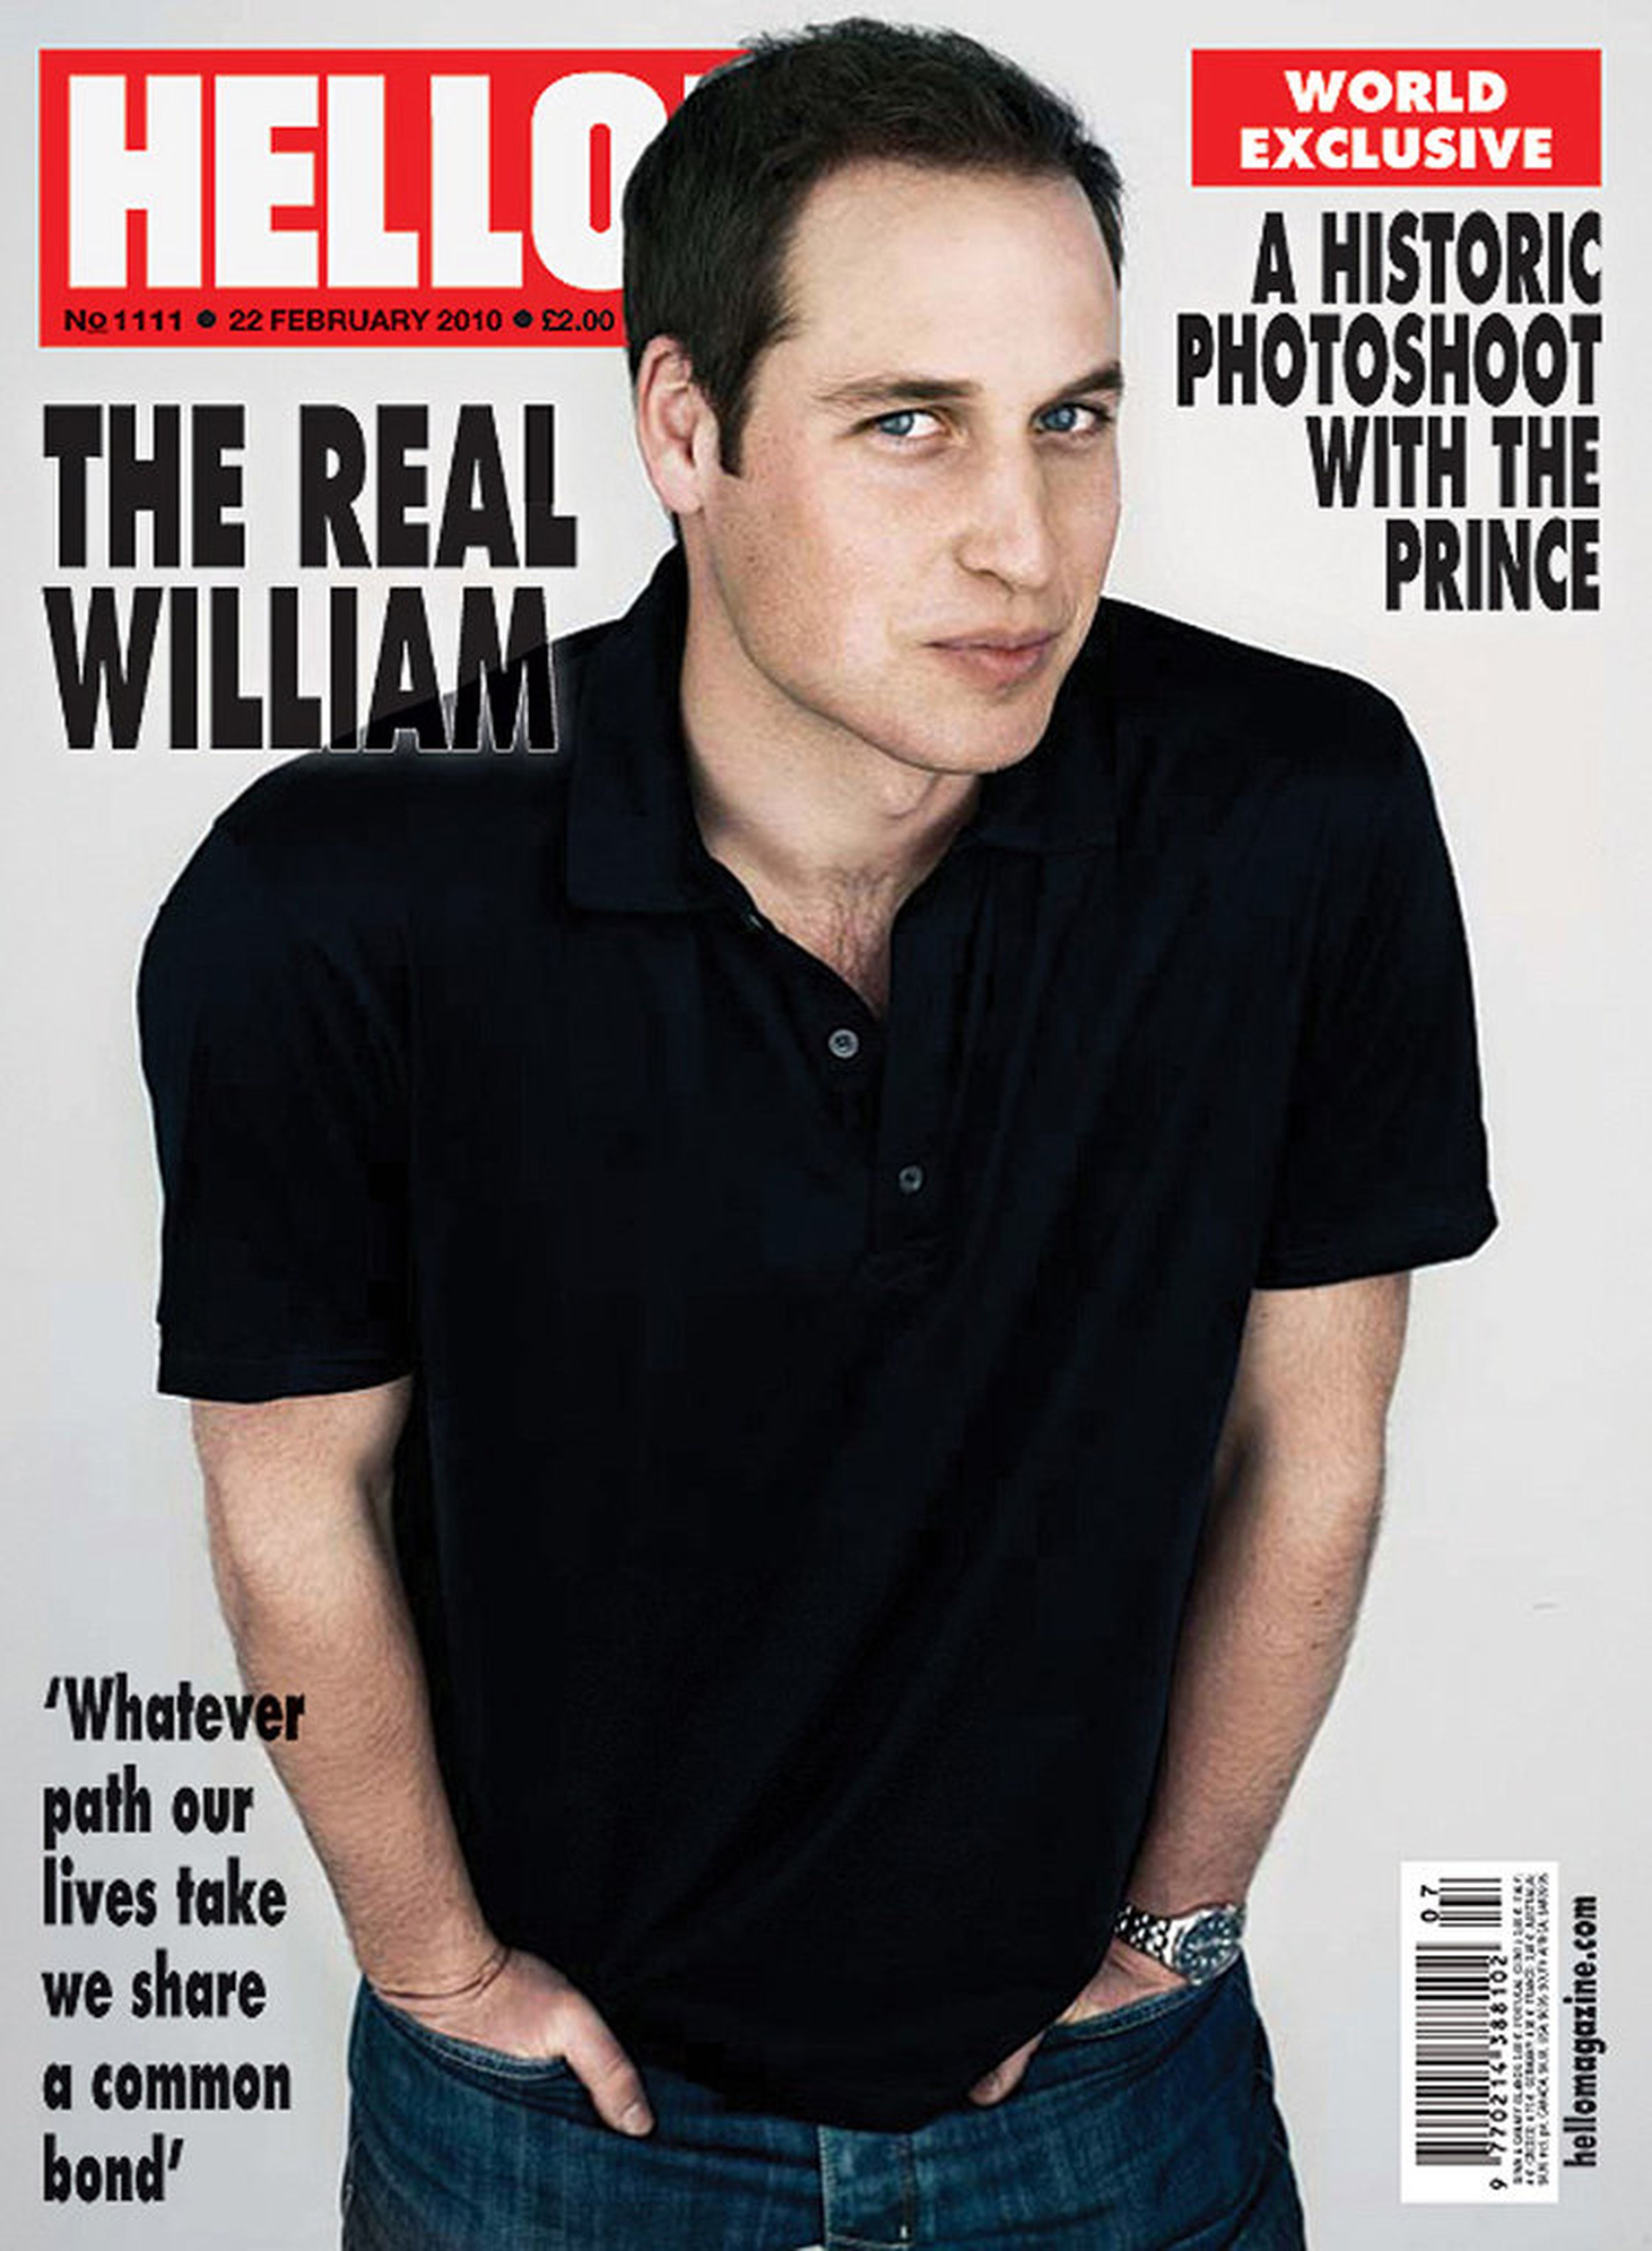 La revista 'Hello!' capturó a Prince William para la portada de su número del 22 de febrero de 2010.